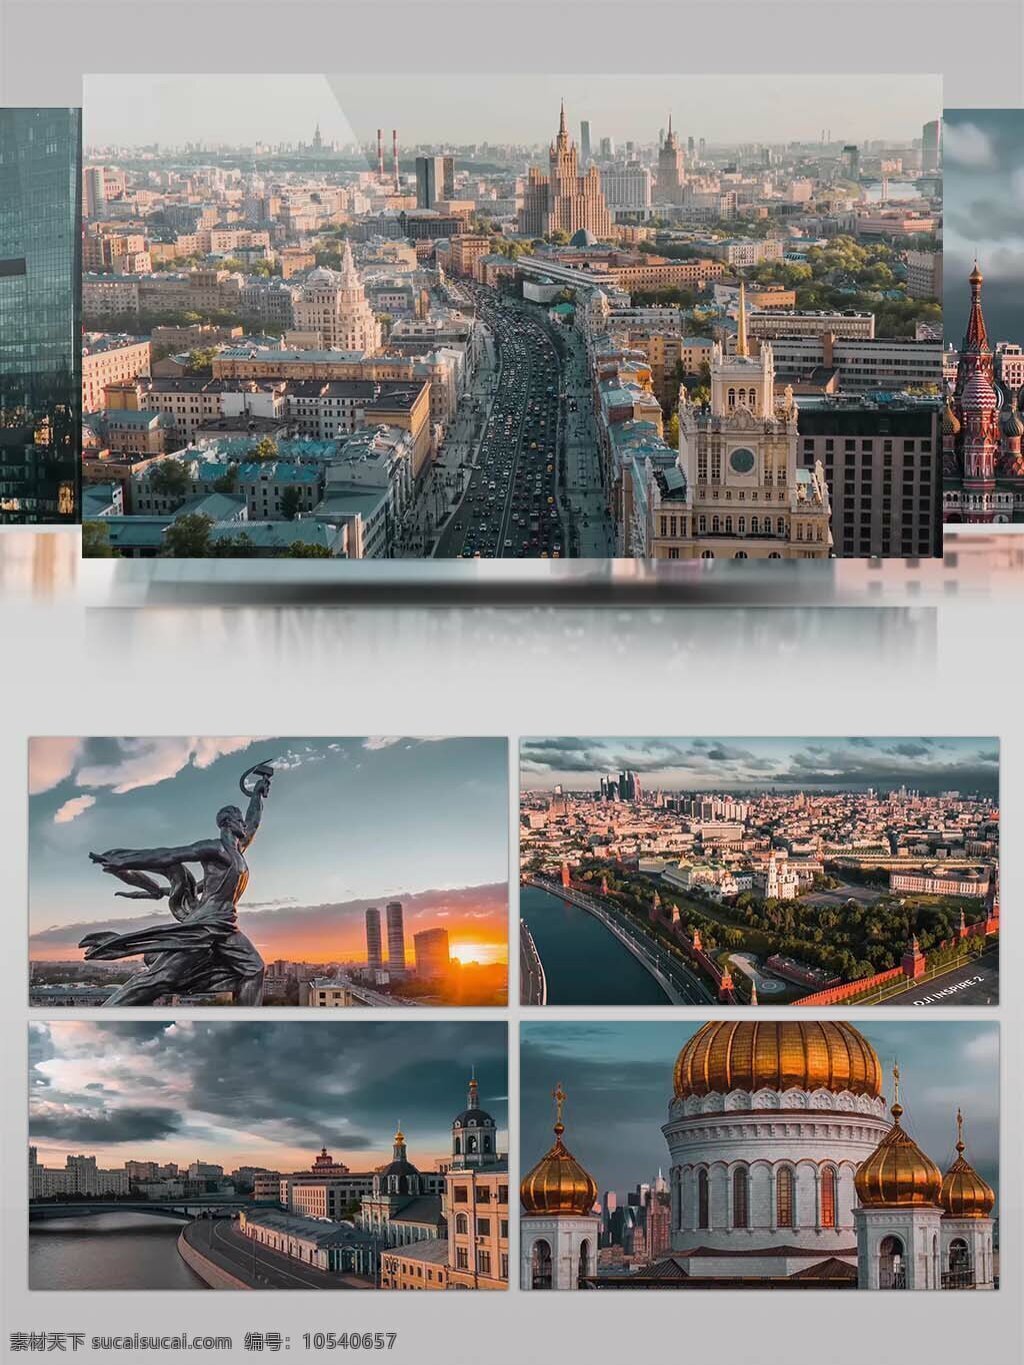 4k 超 清 实拍 莫斯科 城市 景观 视频 延时拍摄 风景 国外 车流 4k超清 实拍莫斯科 城市景观 视频素材